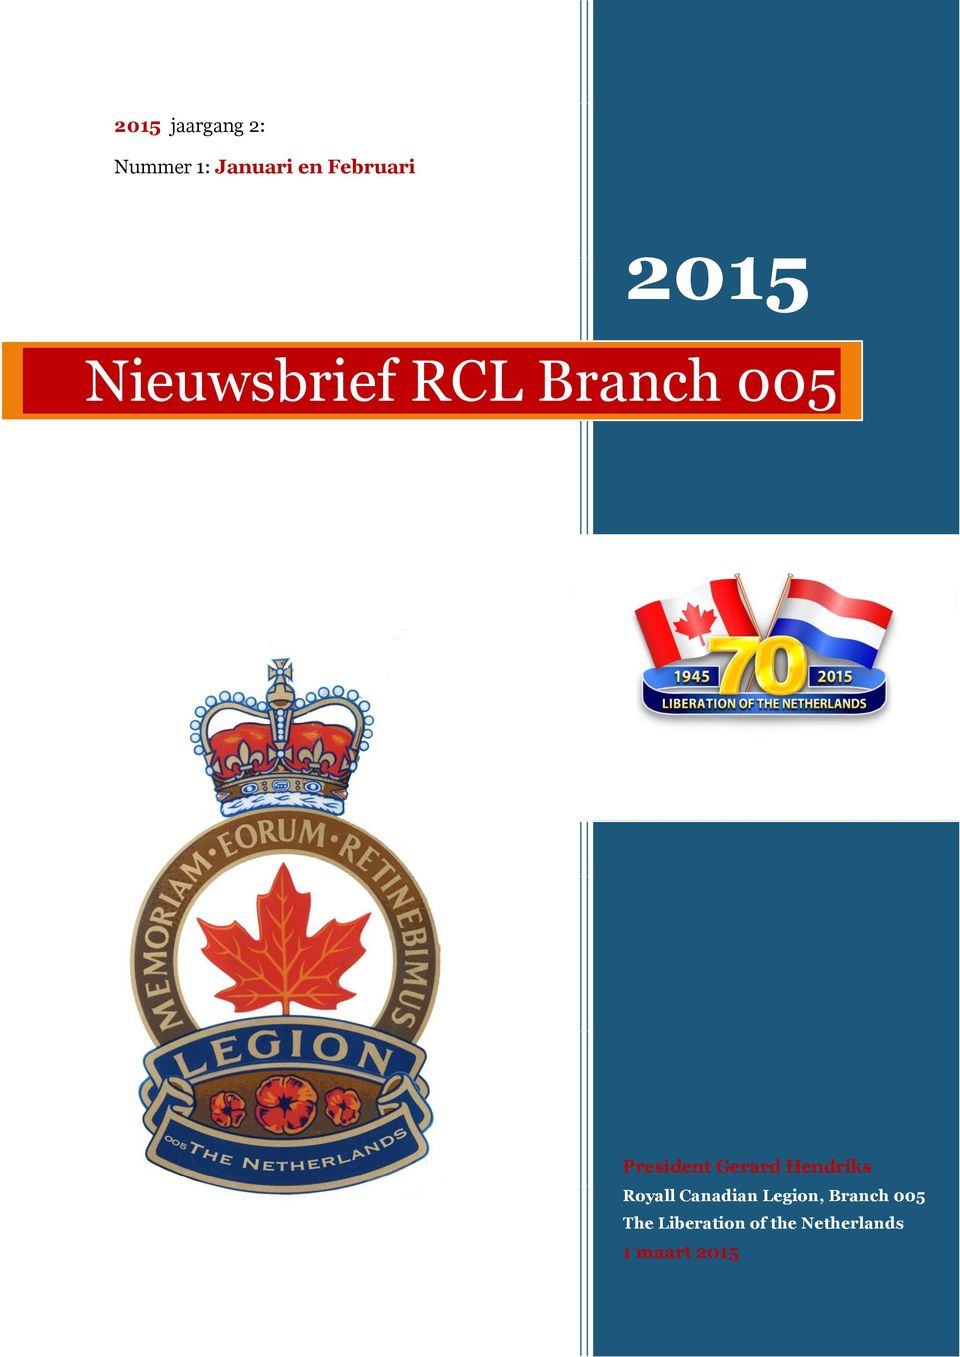 Gerard Hendriks Royall Canadian Legion, Branch